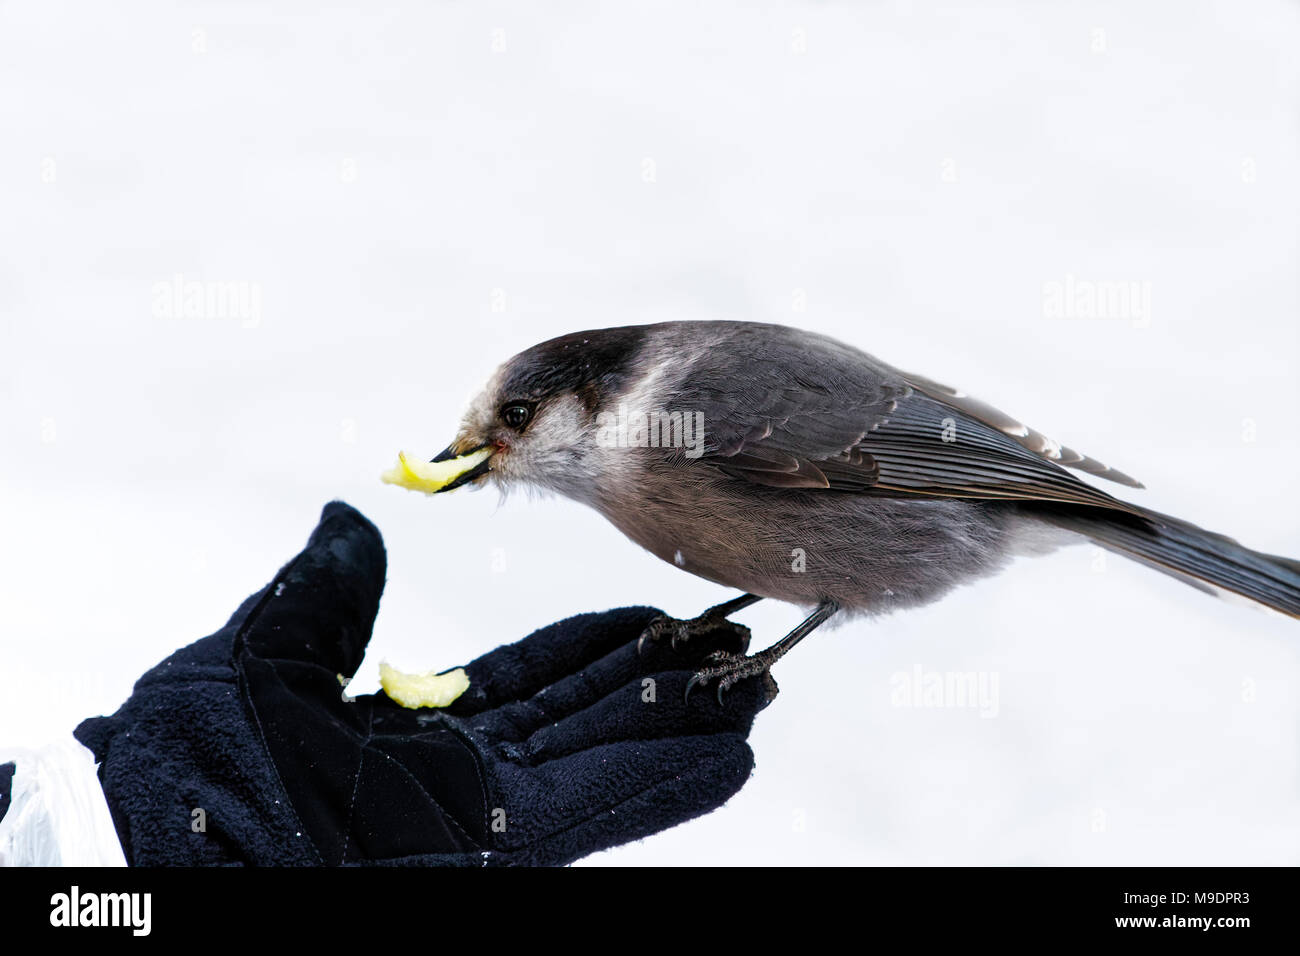 43,118.09138 close-up di grigio Jay, Canada jay mangiare fuori di una donna di mano mentre si alimenta l'uccello Foto Stock